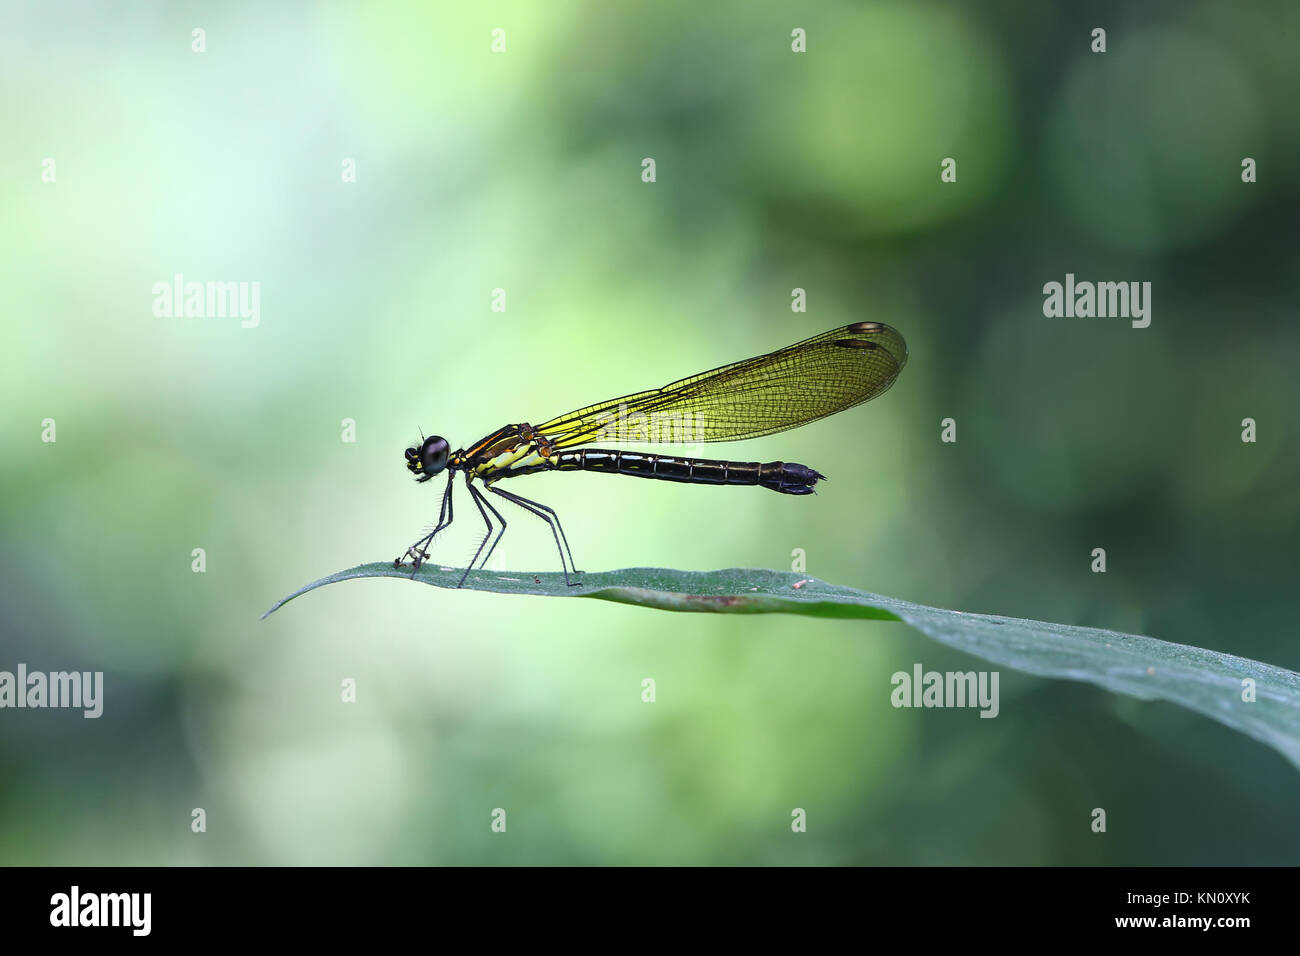 Damselfy jaune/Dragon Fly/Zygoptera assis sur le bord de feuille verte Banque D'Images